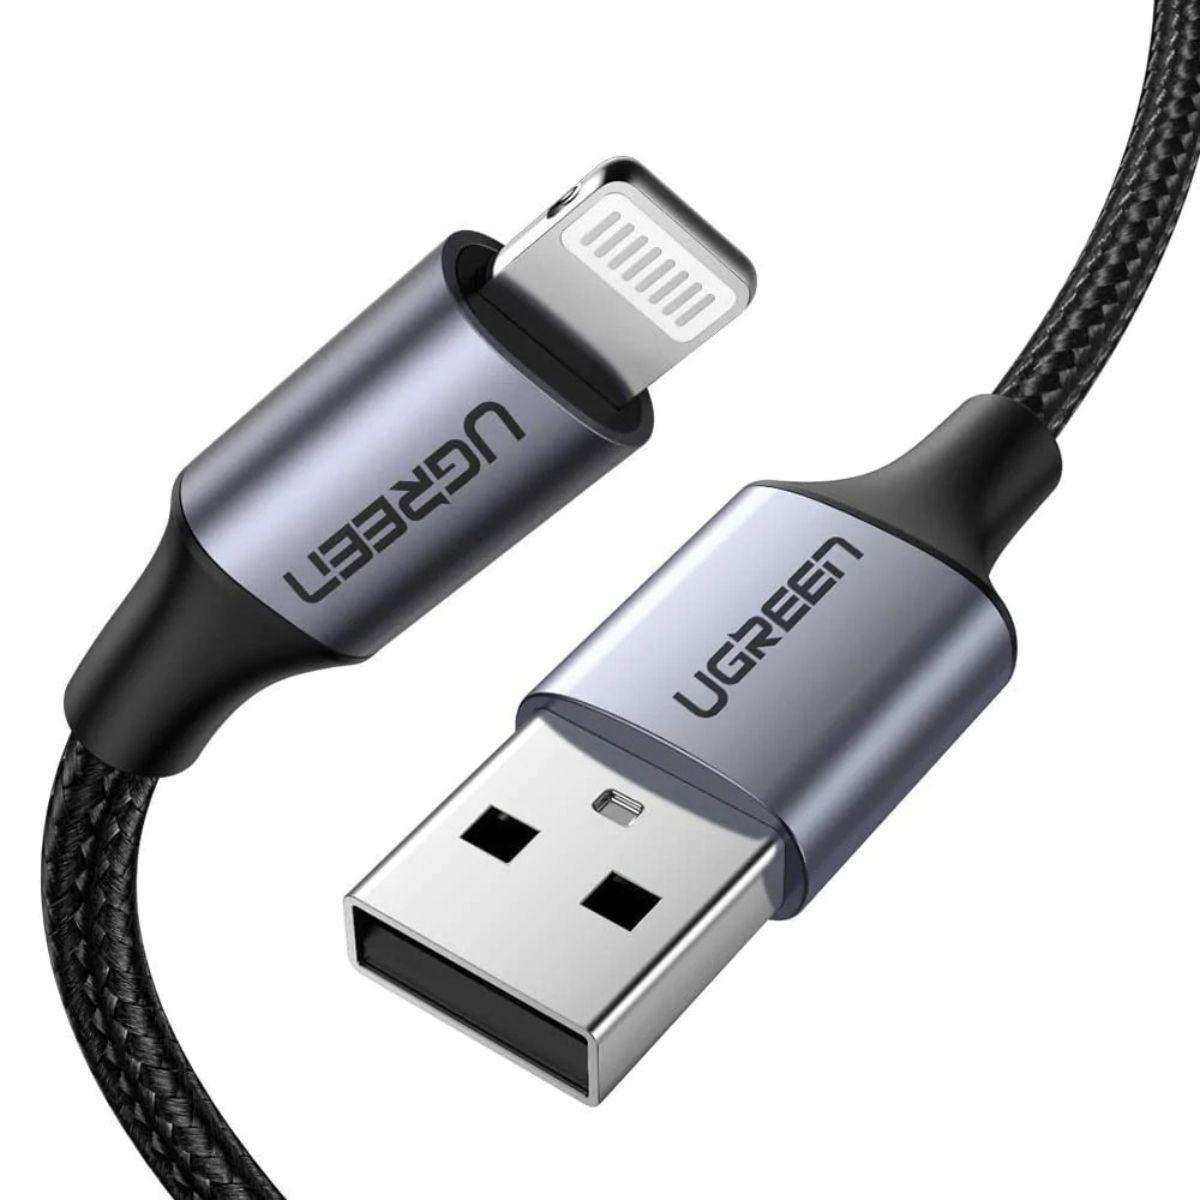 Cáp sạc 1.5m USB Lightning Ugreen 60157 US199 màu đen, truyền tải lên đến 480Mbps, chuẩn MFi